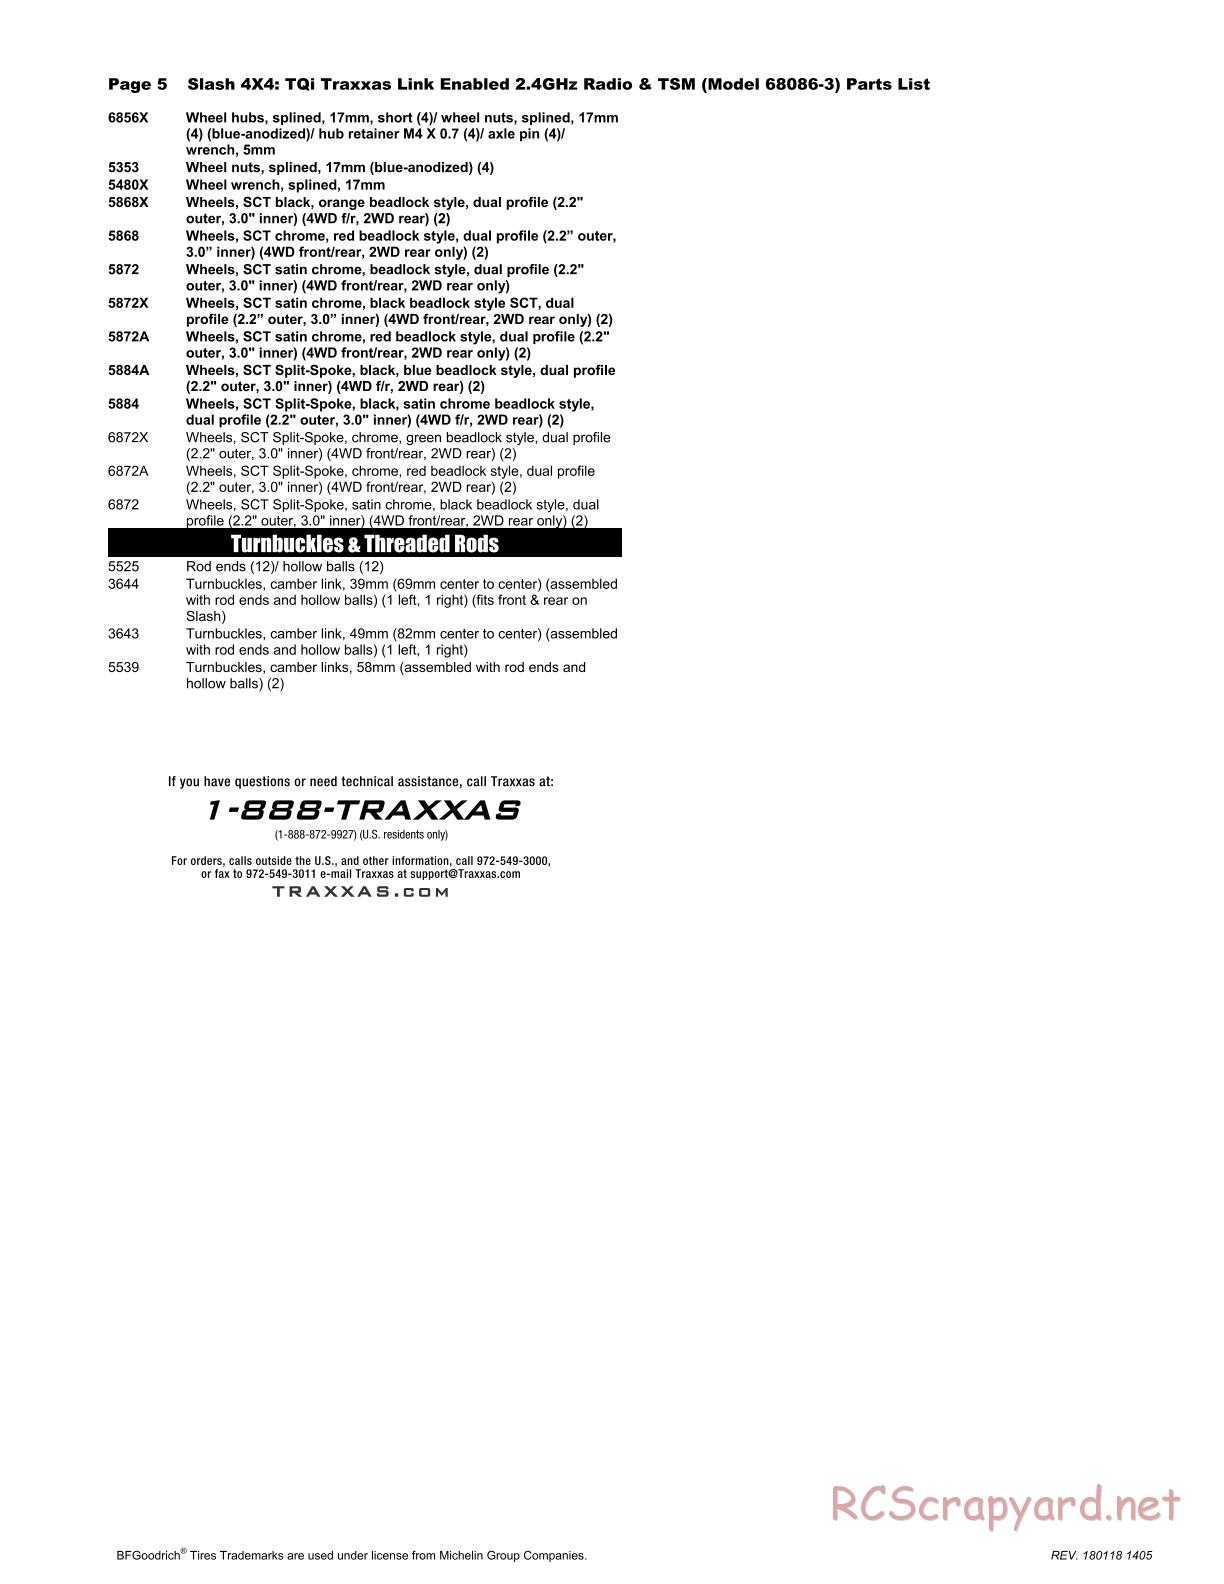 Traxxas - Slash 4x4 TSM (2015) - Parts List - Page 5